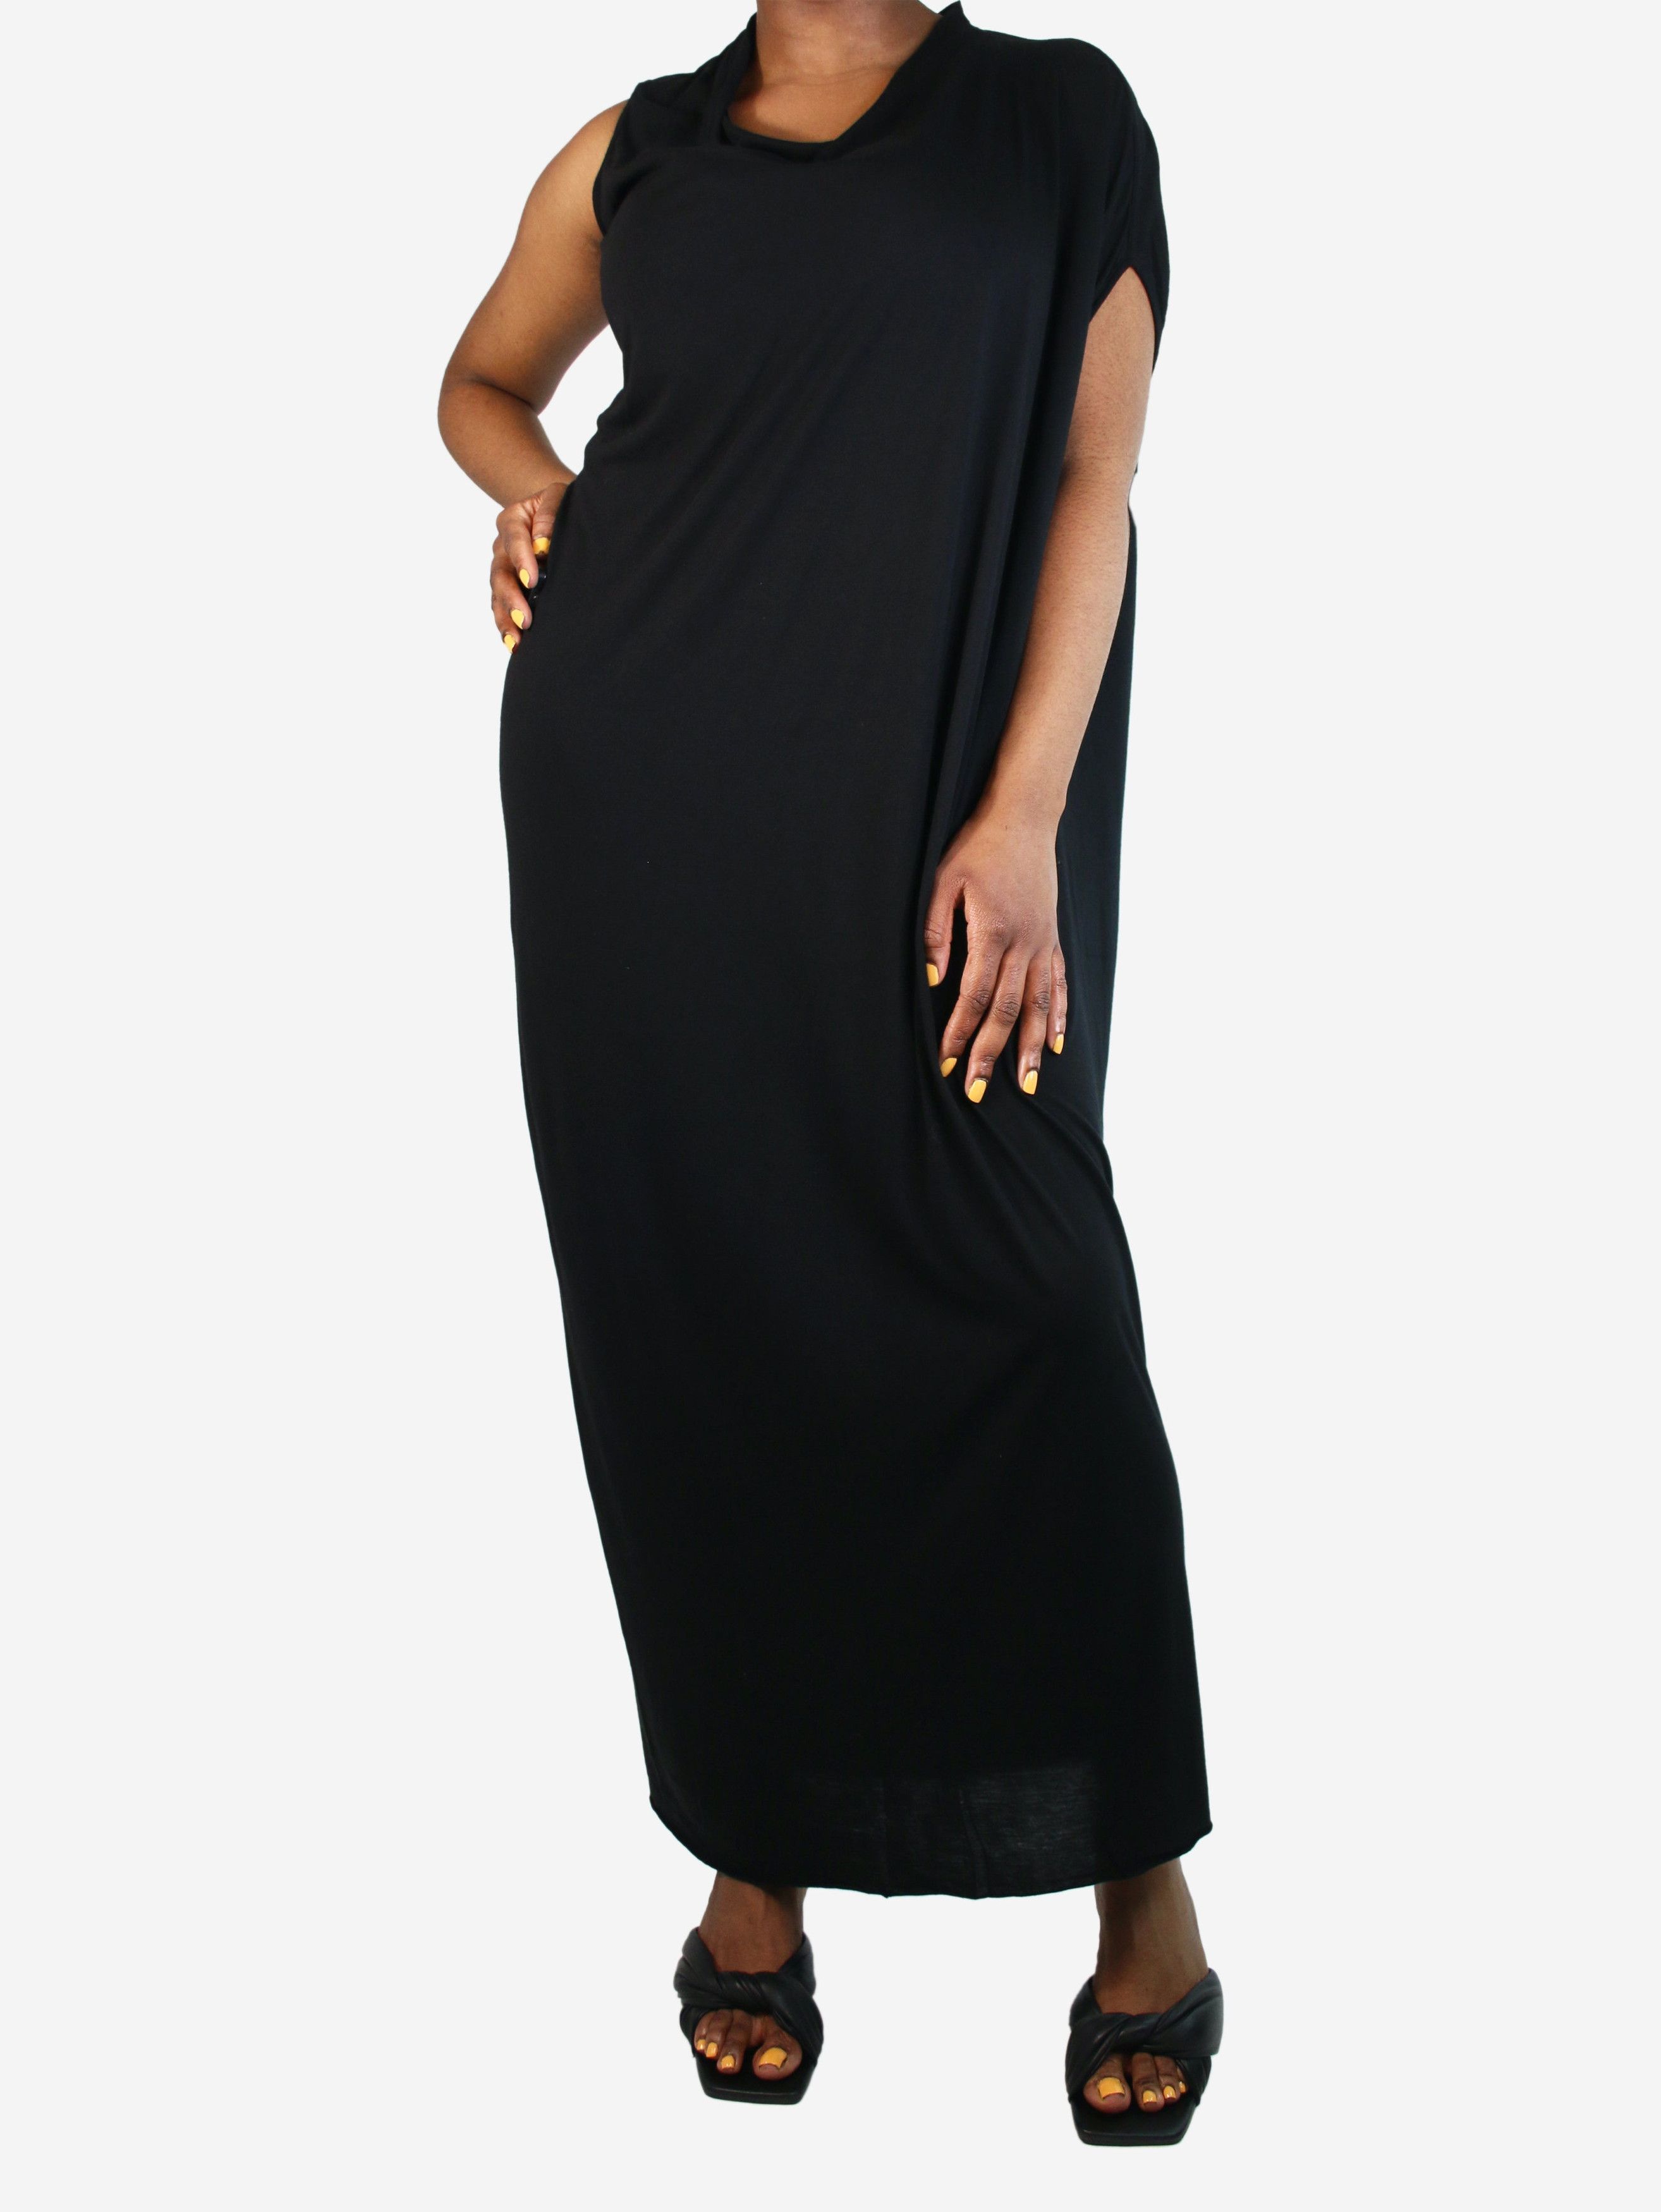 Rick Owens Black one-shoulder maxi dress - size UK 14 Size L / US 10 / IT 46 - 1 Preview